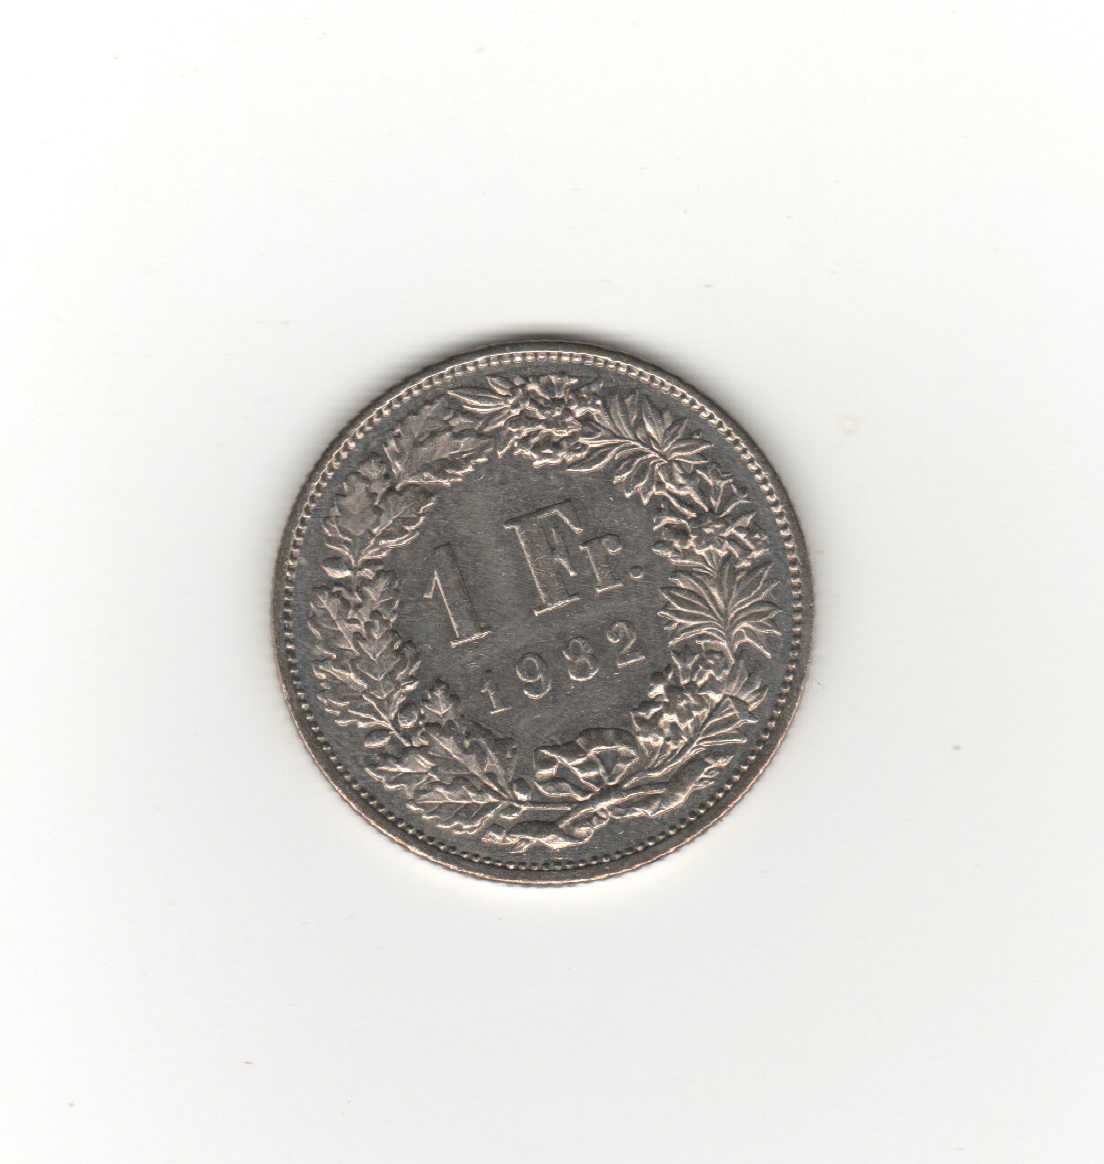  Schweiz 1 Franken 1982   